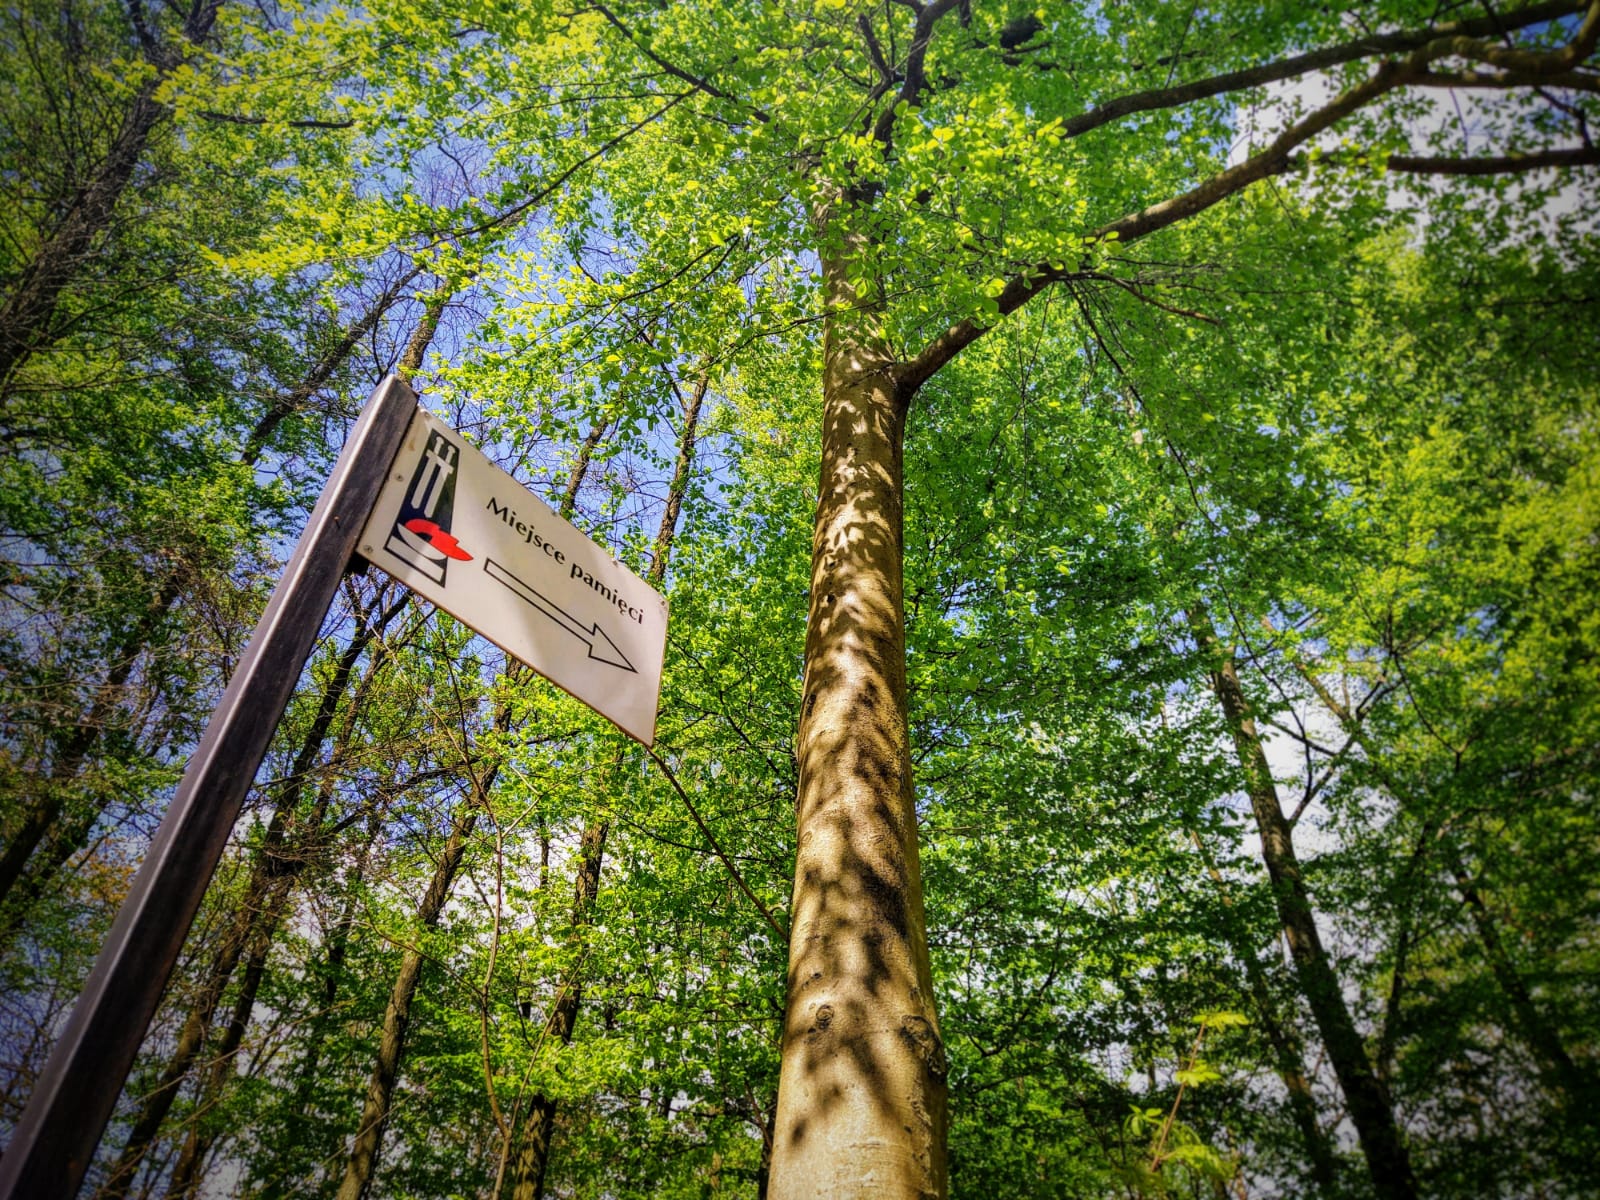 Fotografia przedstawia znak kierunkowy do miesca pamięci w lesie. Fot. Beata Kątna (Nadleśnictwo Kalisz).